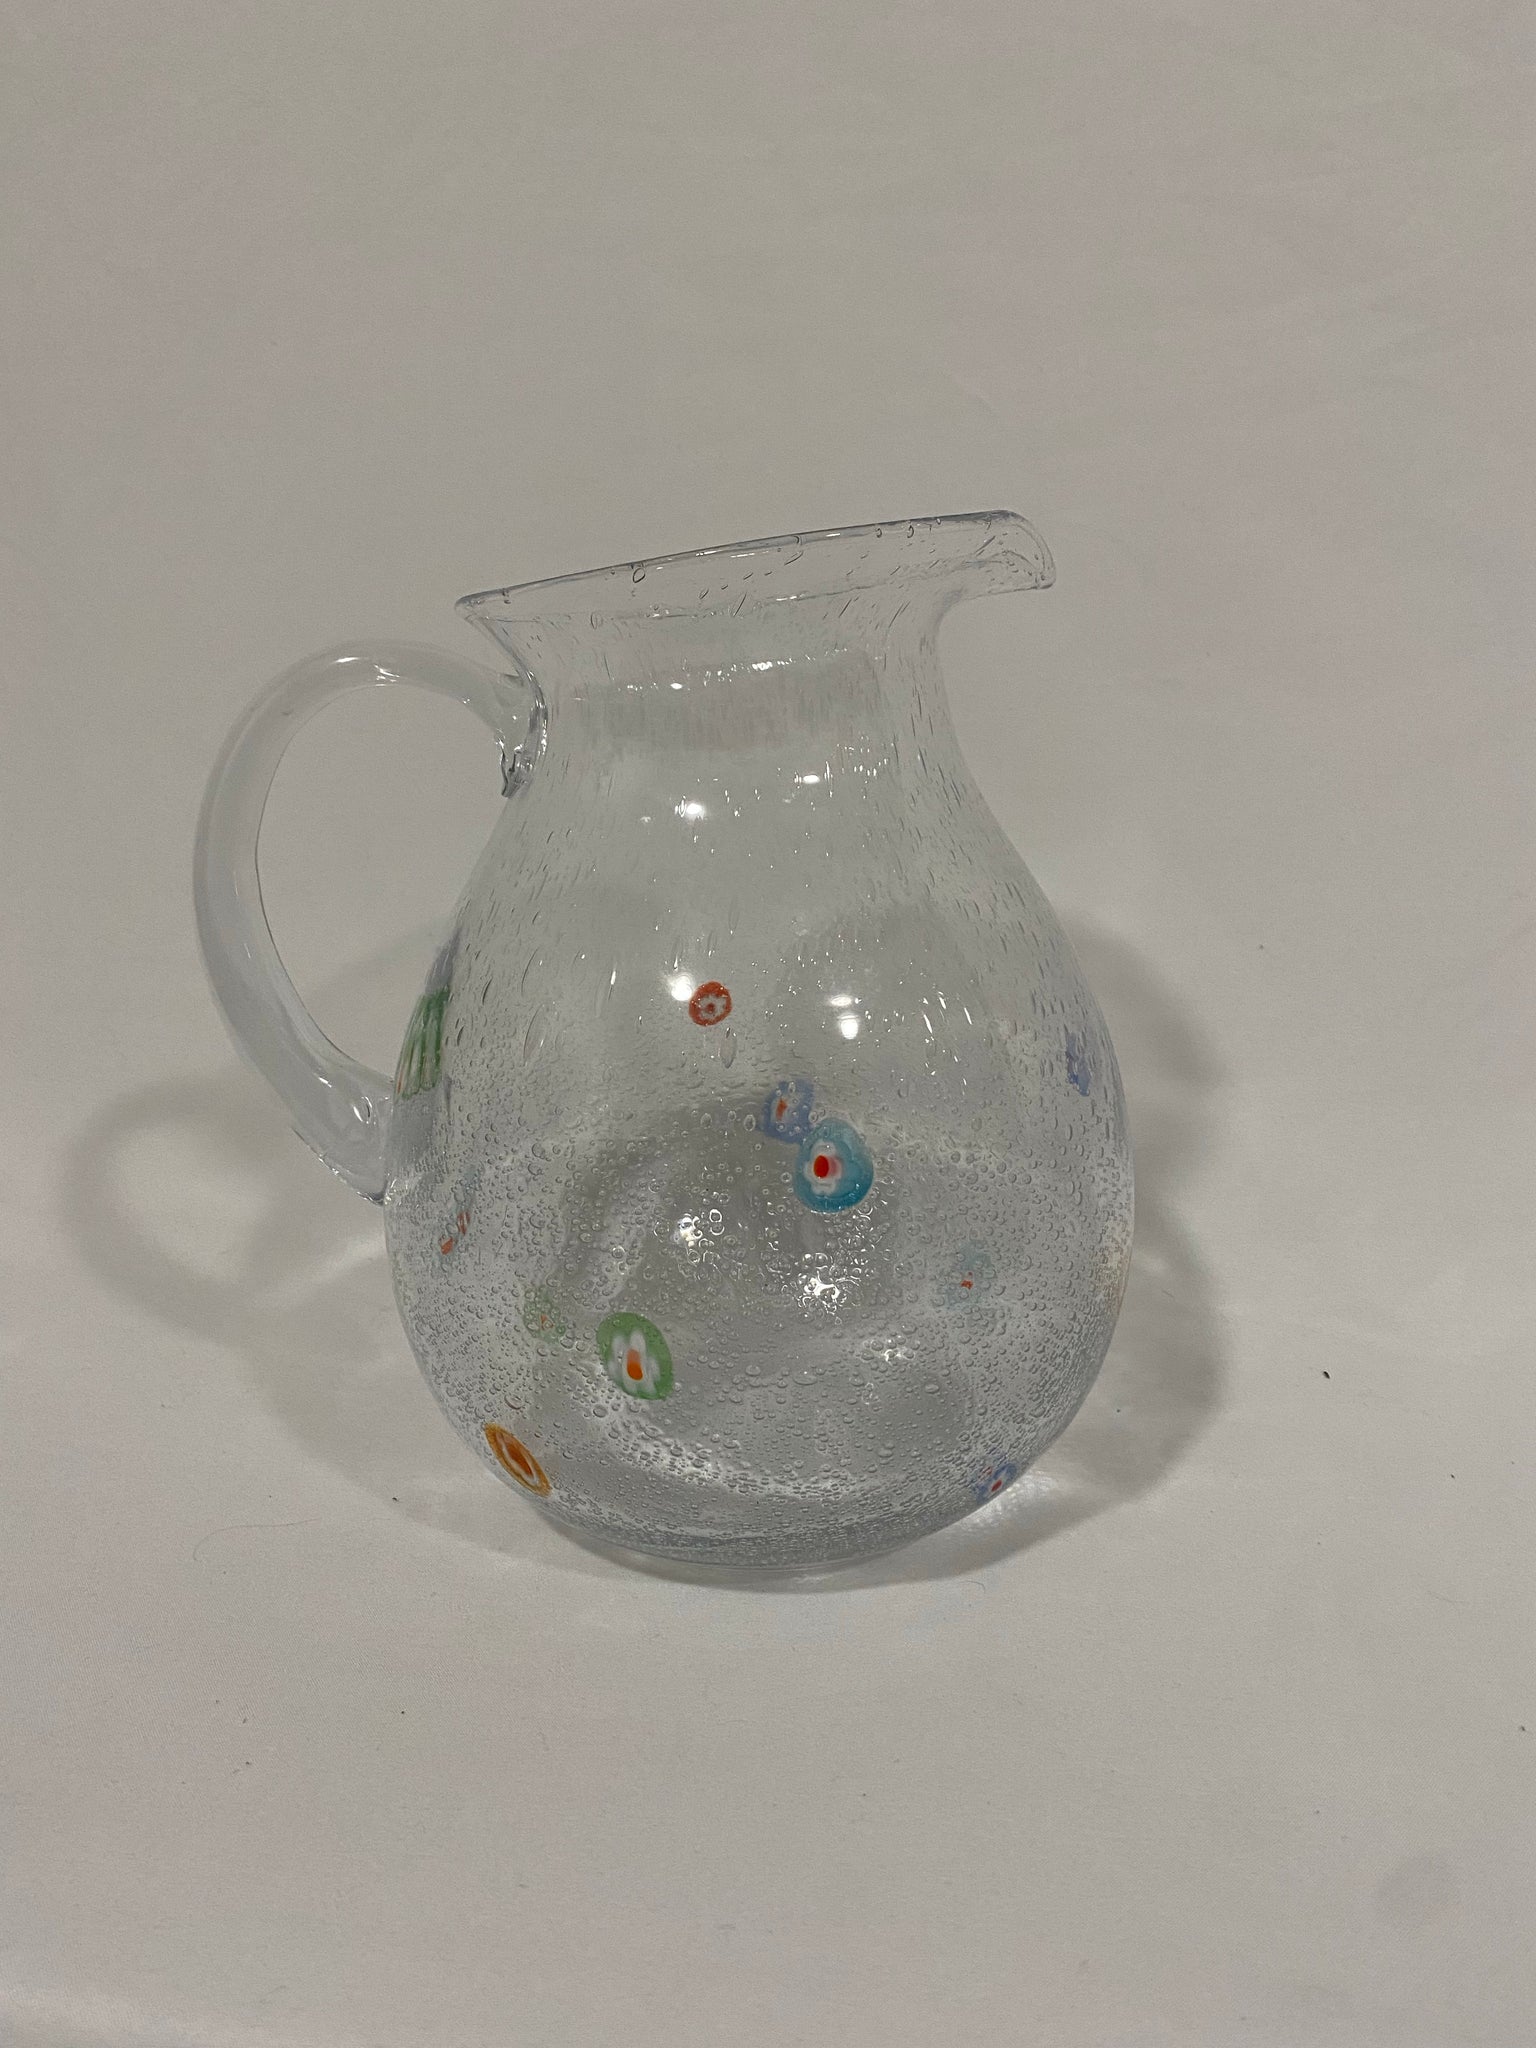 Millefiori glassware